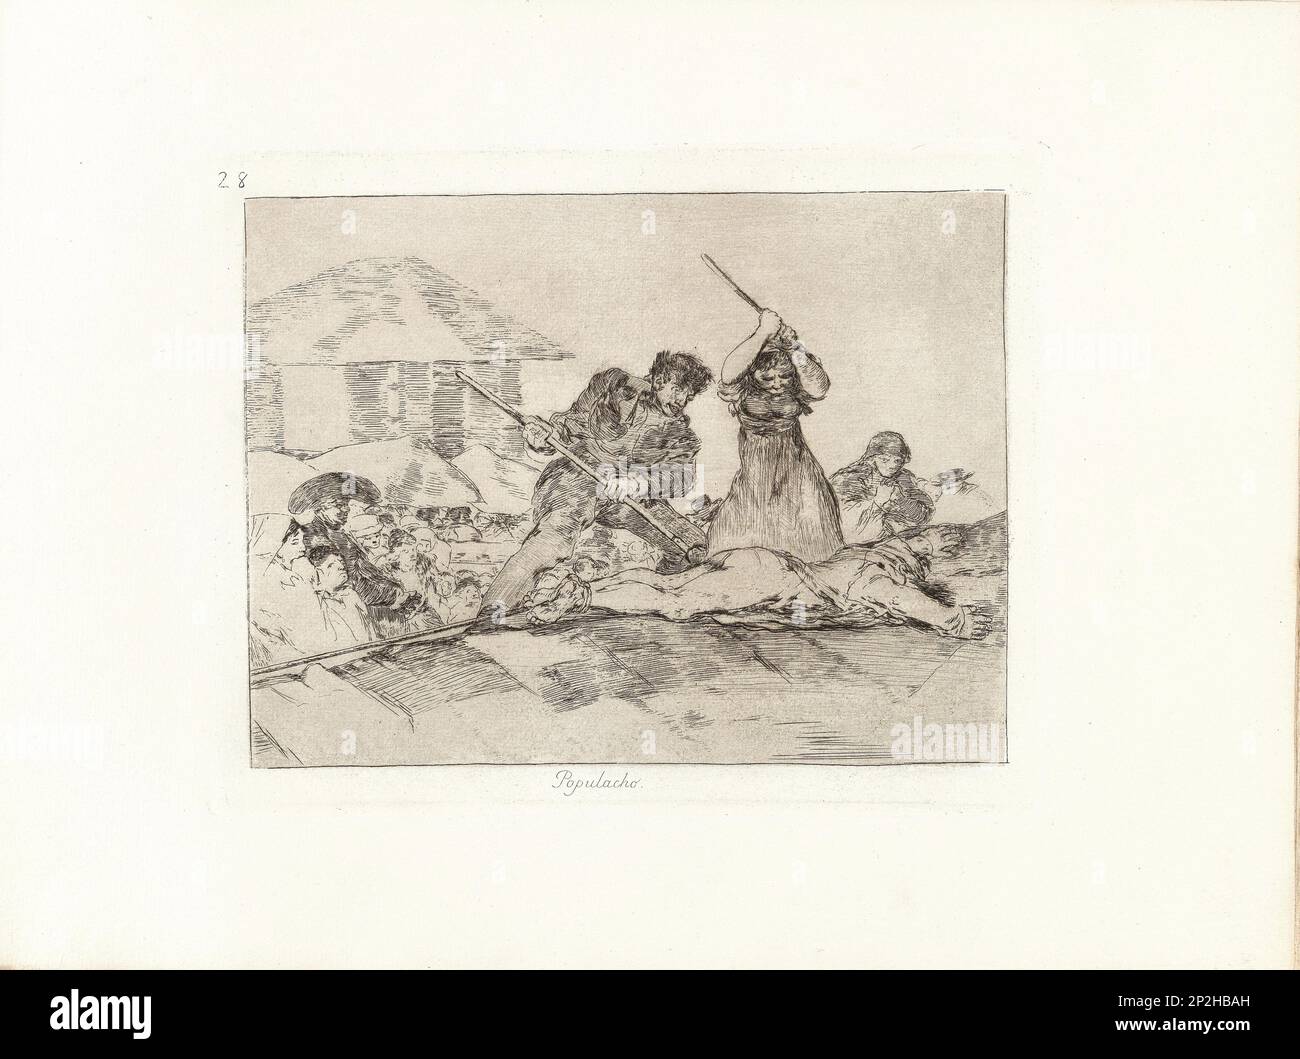 Los Desastres de la Guerra (die Kriegskatastrophen), Platte 28: Populacho (Pöbel), 1810er. Private Sammlung. Stockfoto